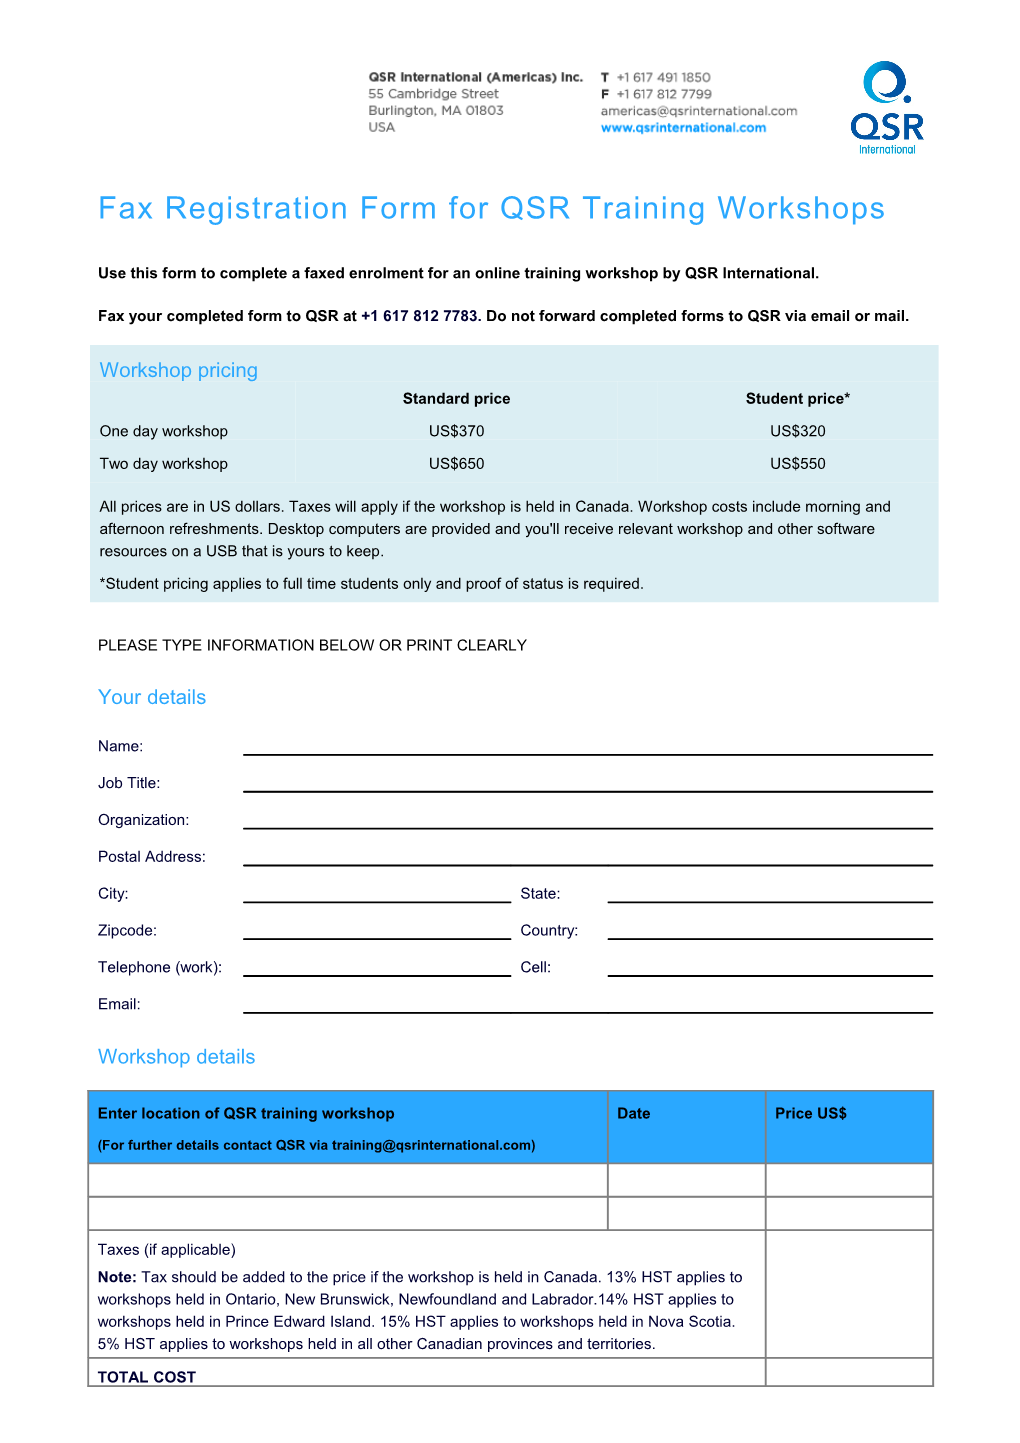 Fax Registration Form for QSR Workshop (US)